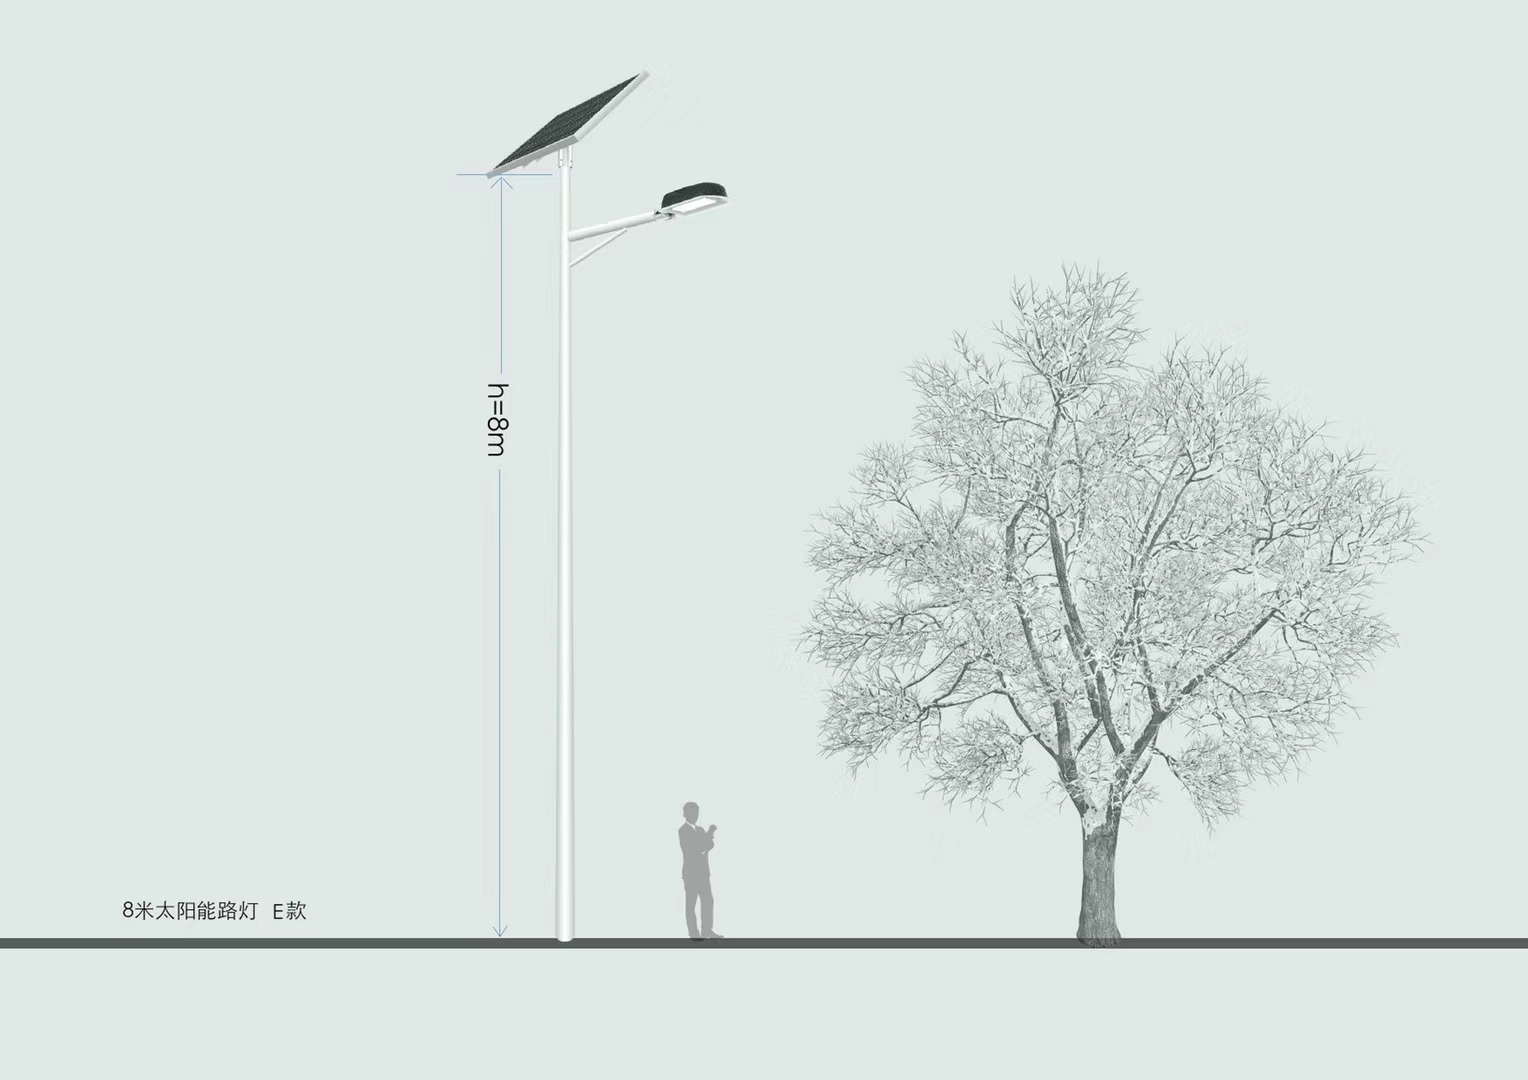 LED Solar Street light